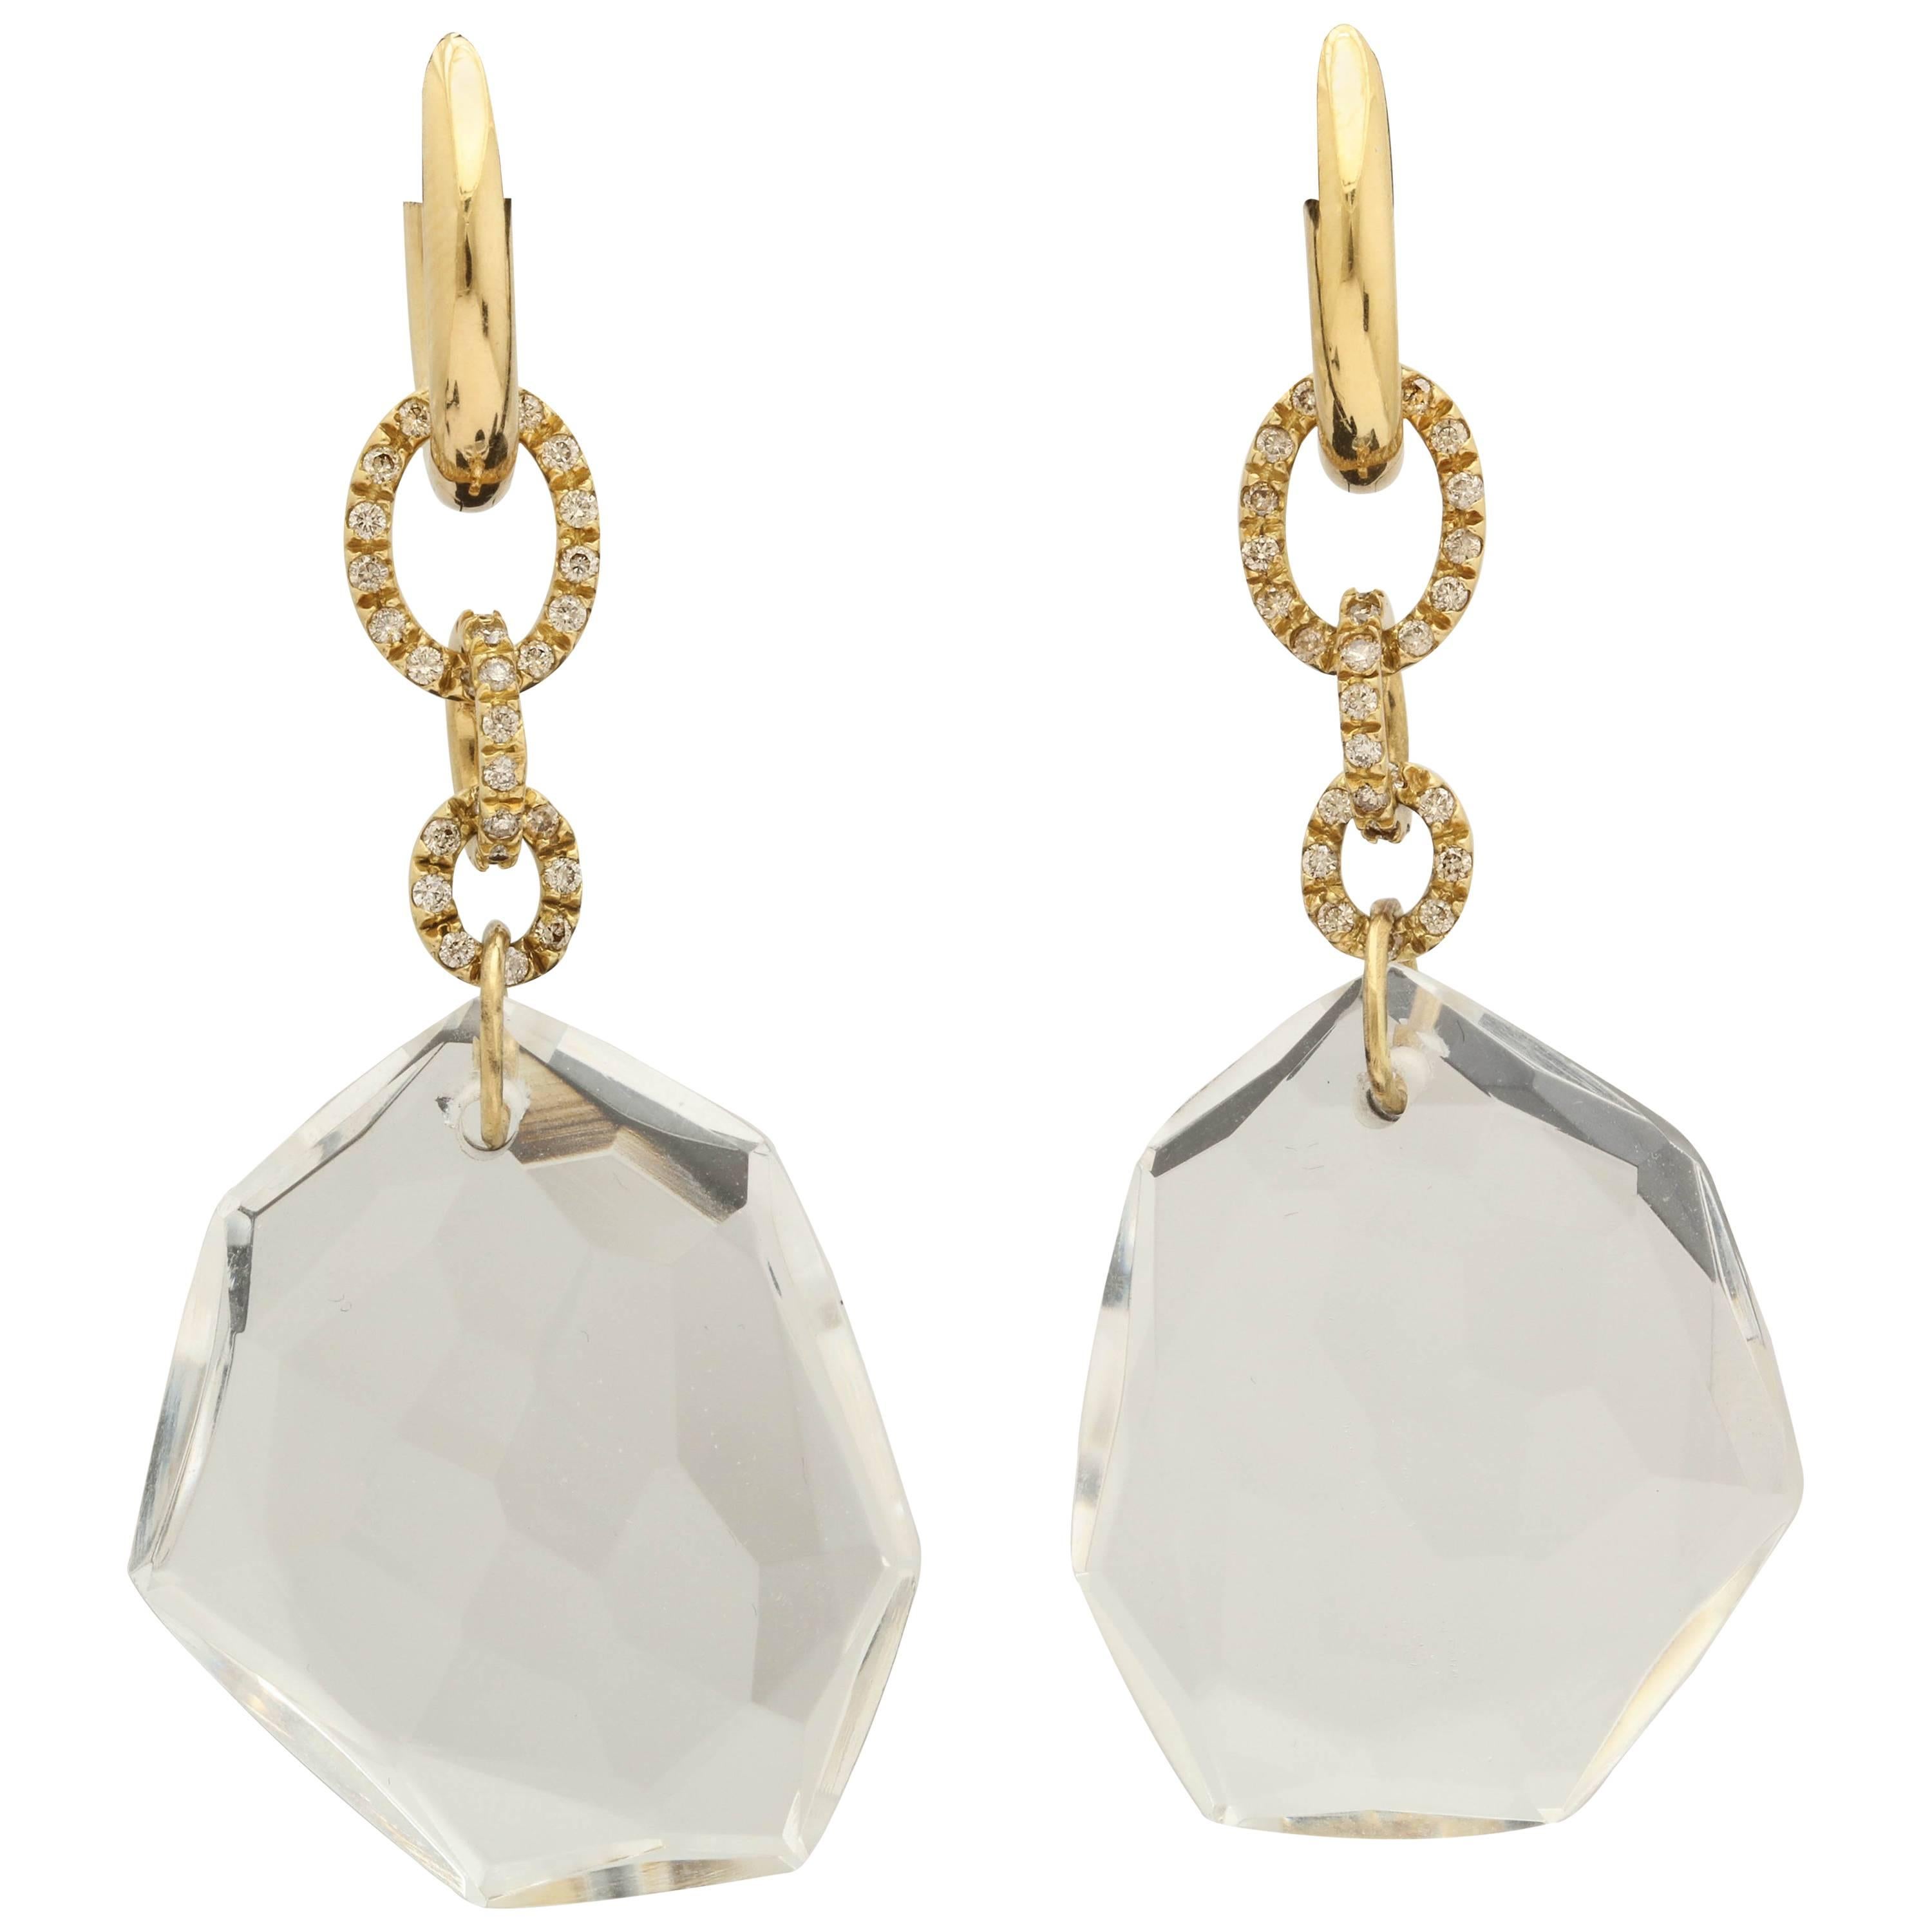 H. Stern 1990s Rock Crystal Diamonds Flexible Gold Link Earrings